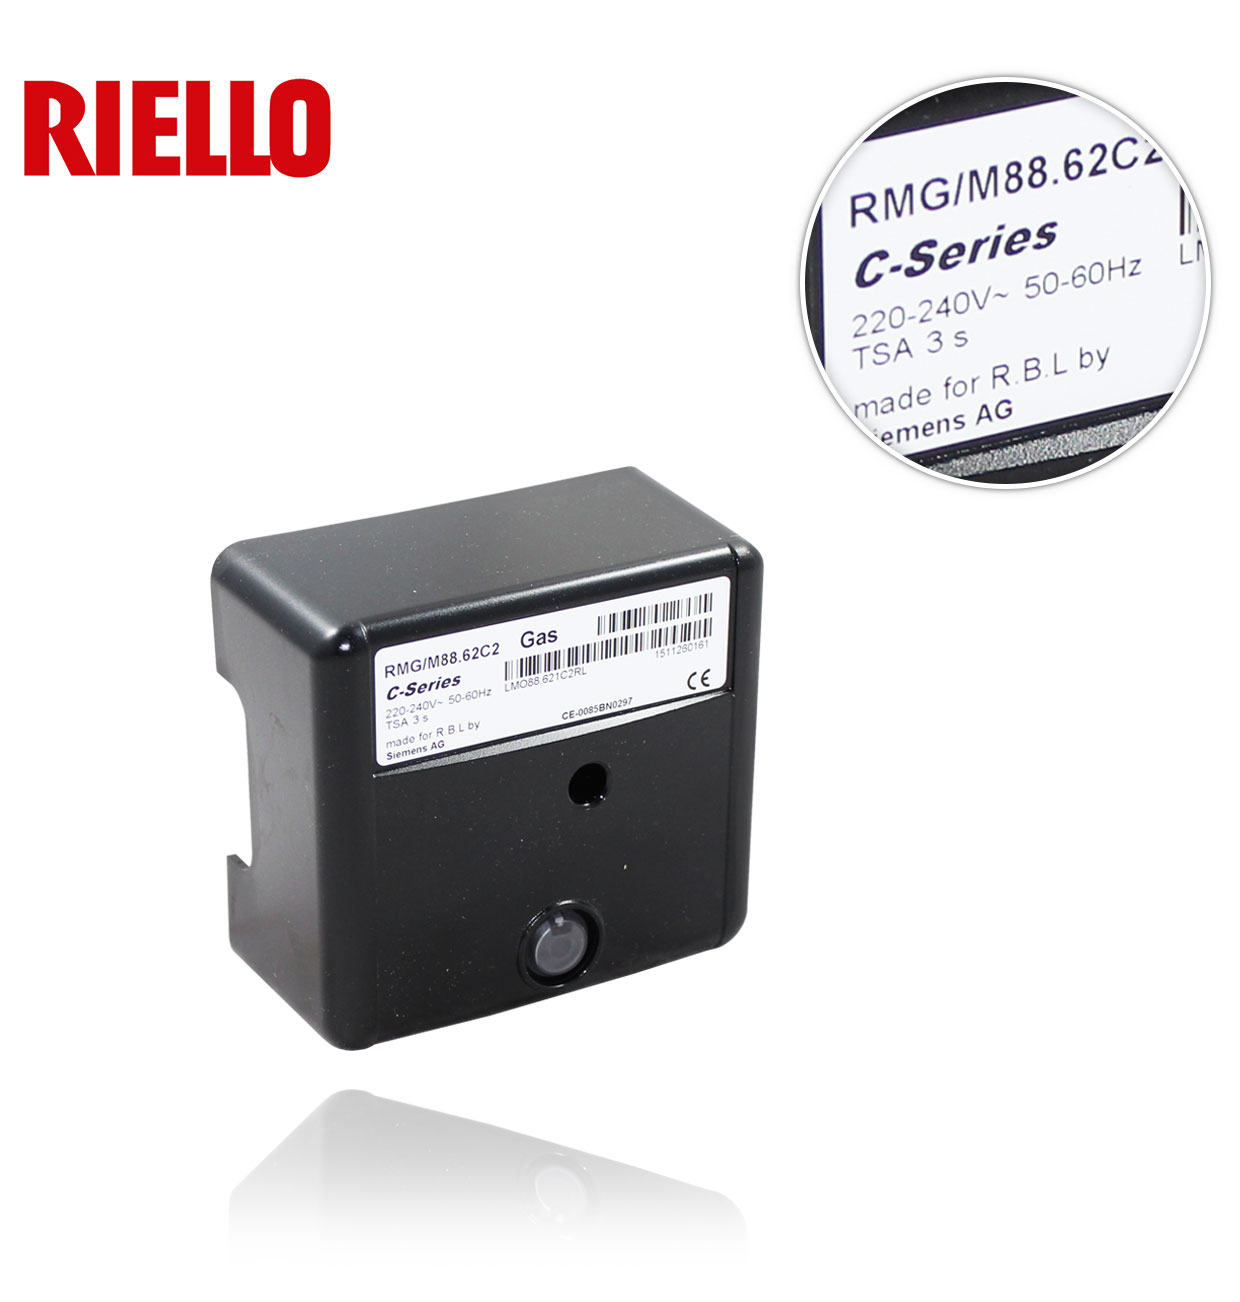 RIELLO 3013362 RMG/M 88 62 C2 CONTROL BOX